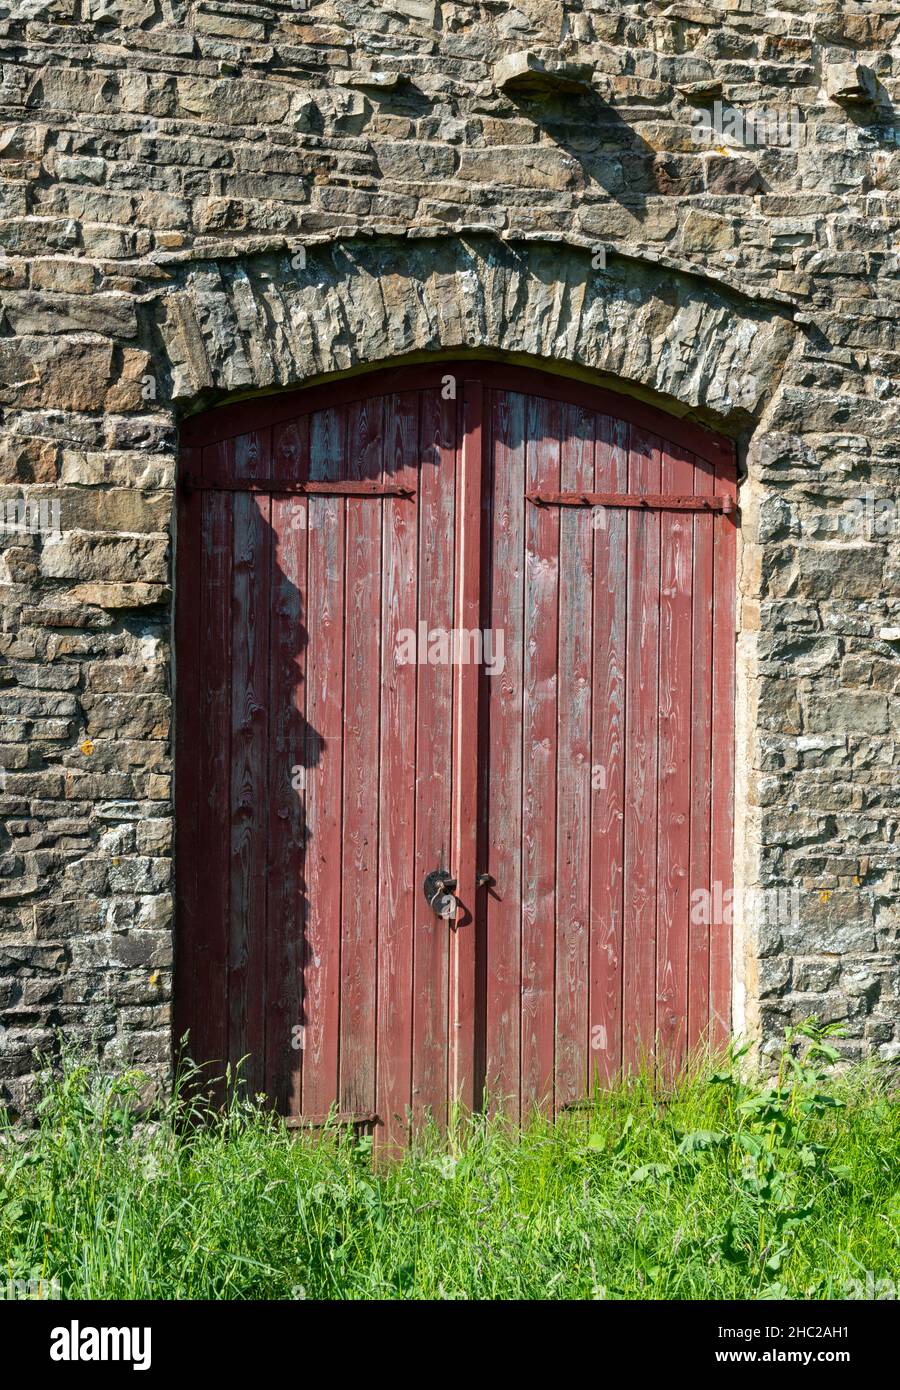 Des portes peintes en rouge forment l'entrée d'une grange traditionnelle construite sur des estons dans les Yorkshire Dales Banque D'Images